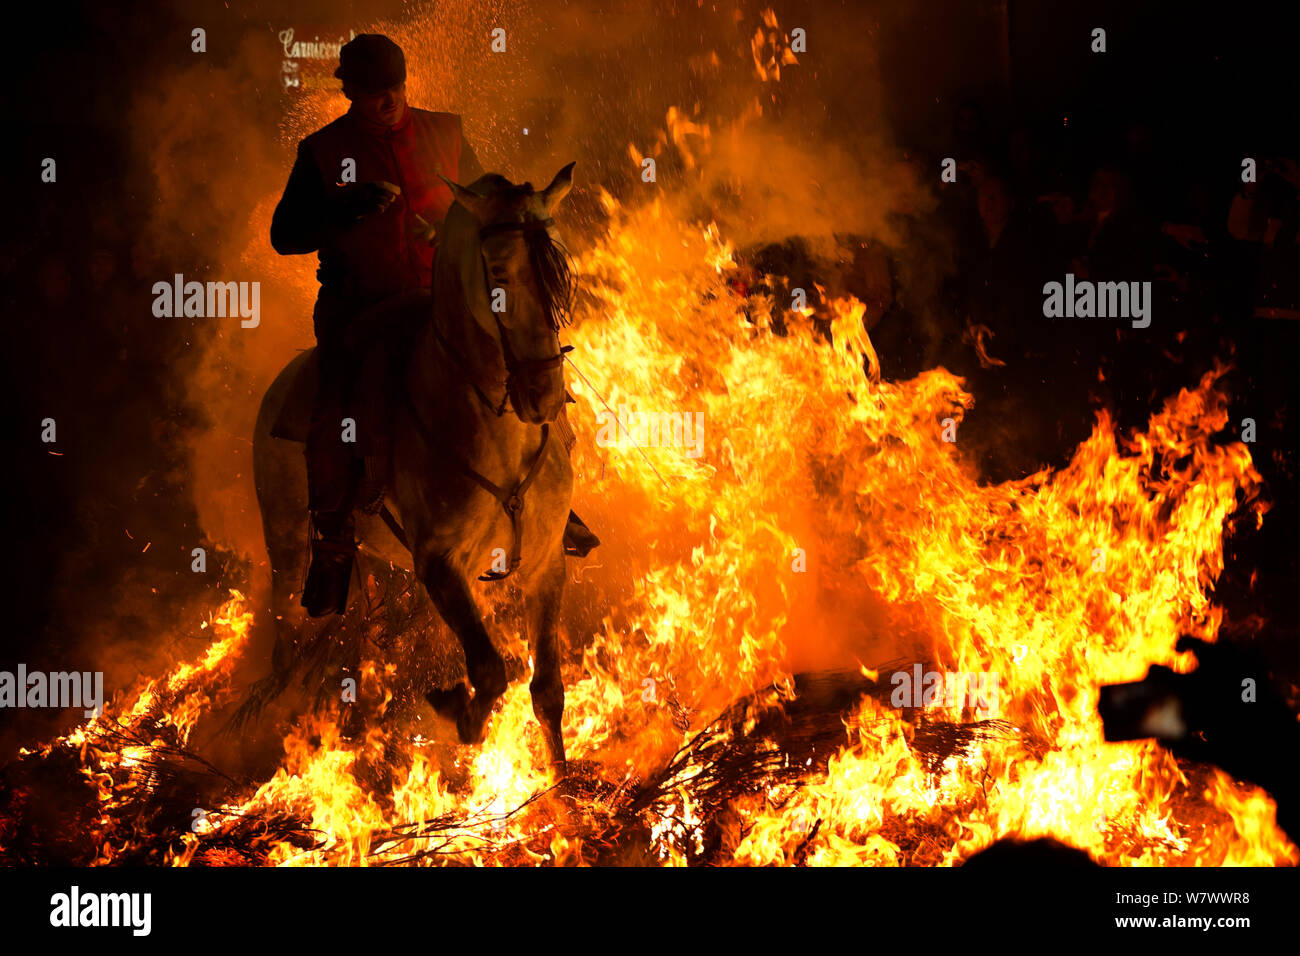 L'uomo saltare attraverso il fuoco per purificare il suo cavallo durante il festival Luminarias, tenuto ogni Gennaio in San Bartolome de Pinares, provincia di Ávila, Castiglia e León, Spagna, Gennaio 2014. Foto Stock